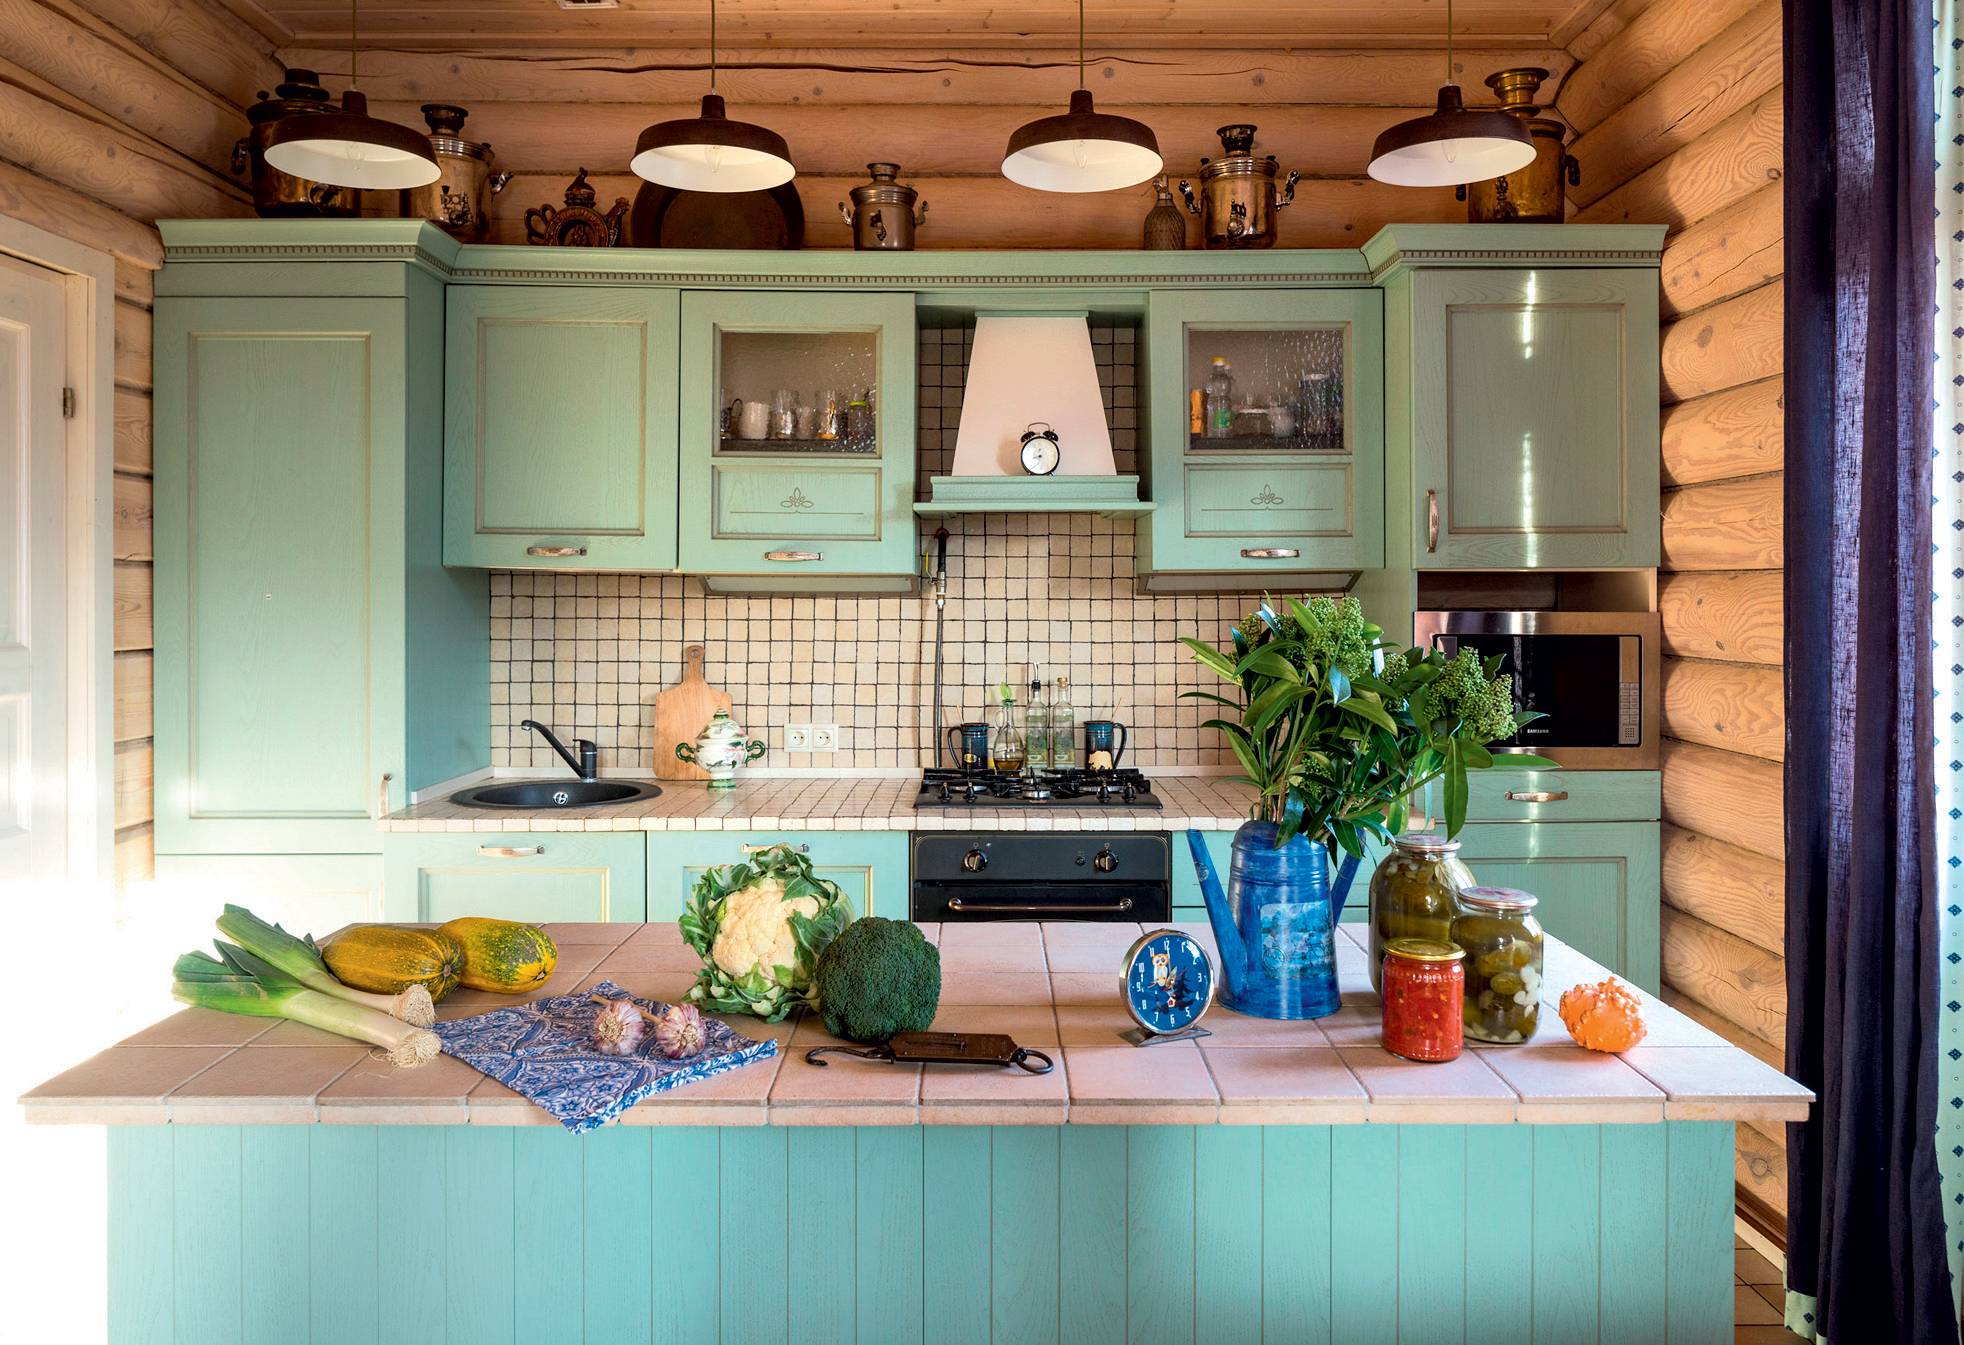 Интерьер кухни в частном доме: как оформить интерьер на даче своими руками | онлайн-журнал о ремонте и дизайне